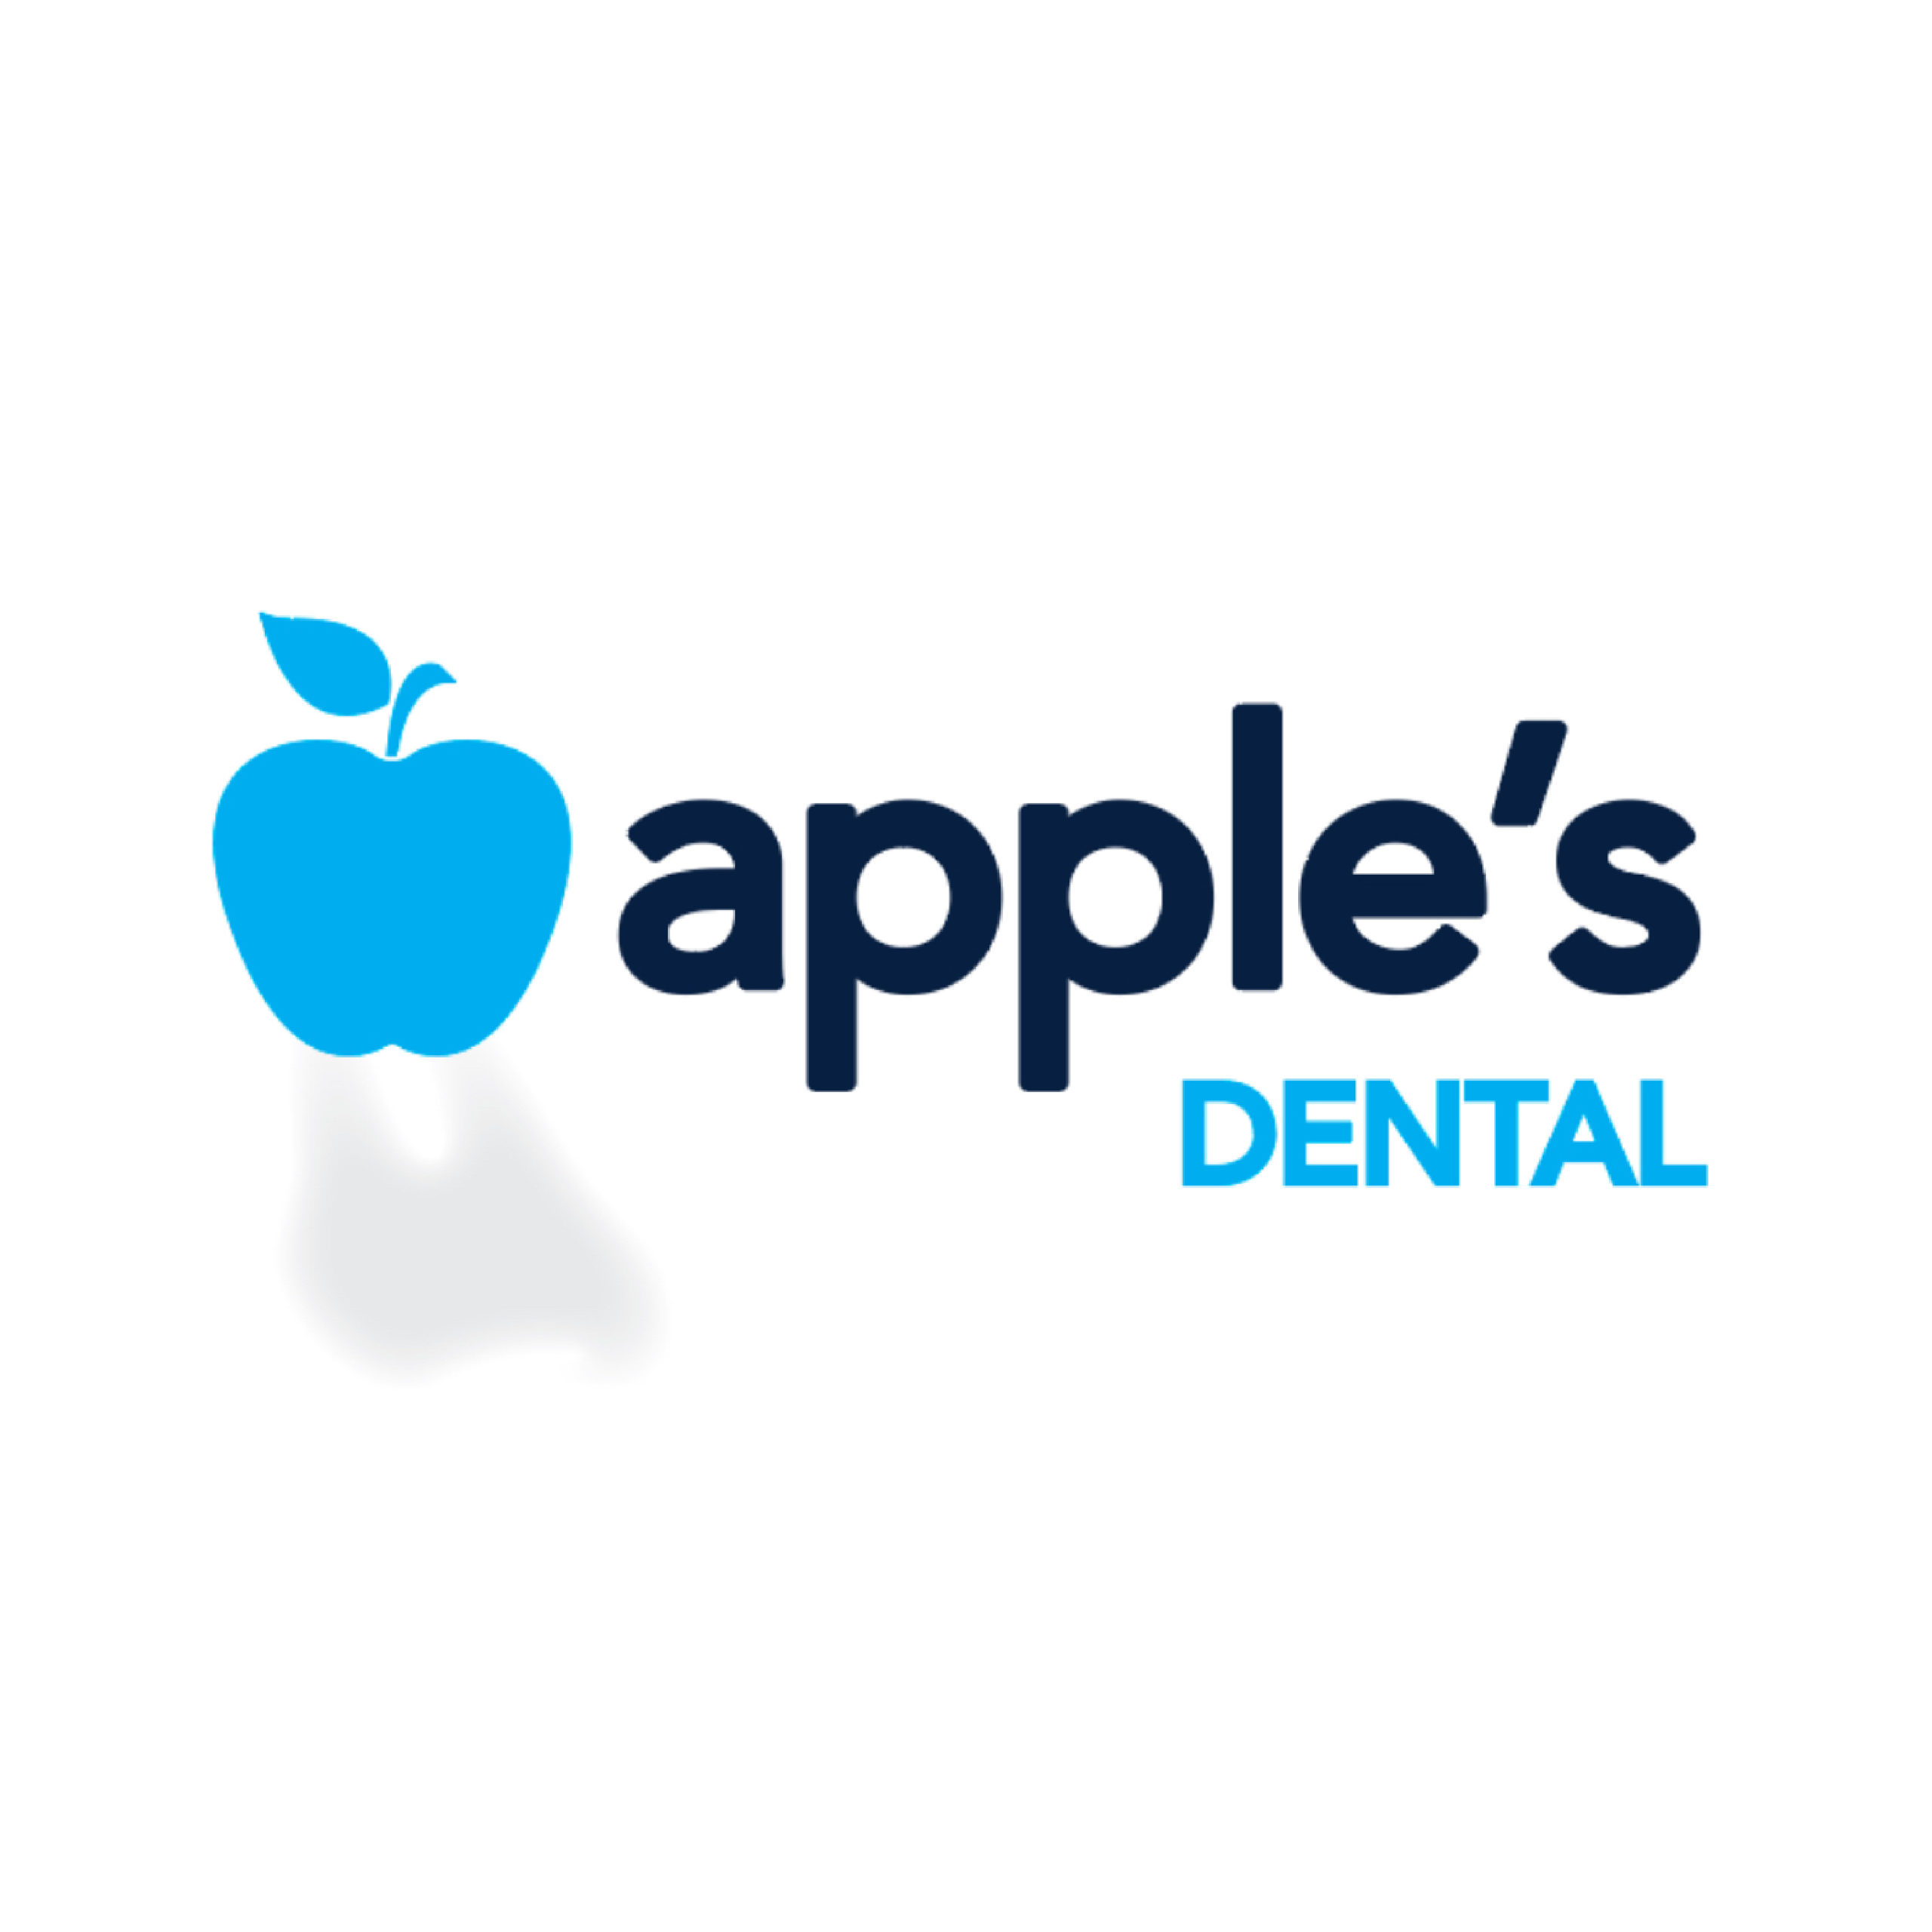 Apple's Dental Brand